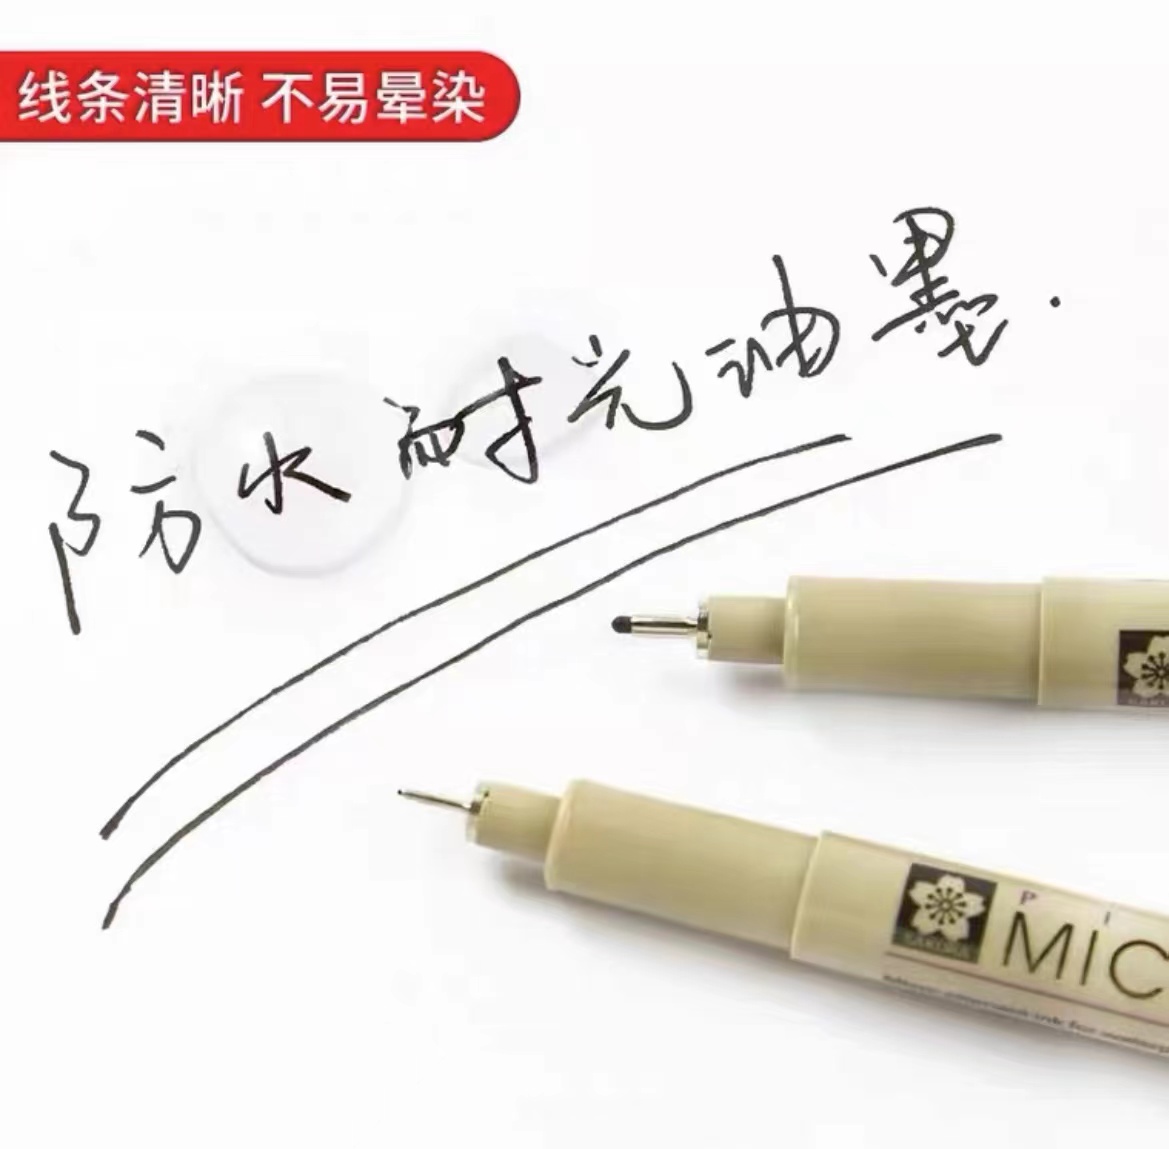 防水勾线笔 钢笔淡彩 樱花针管笔